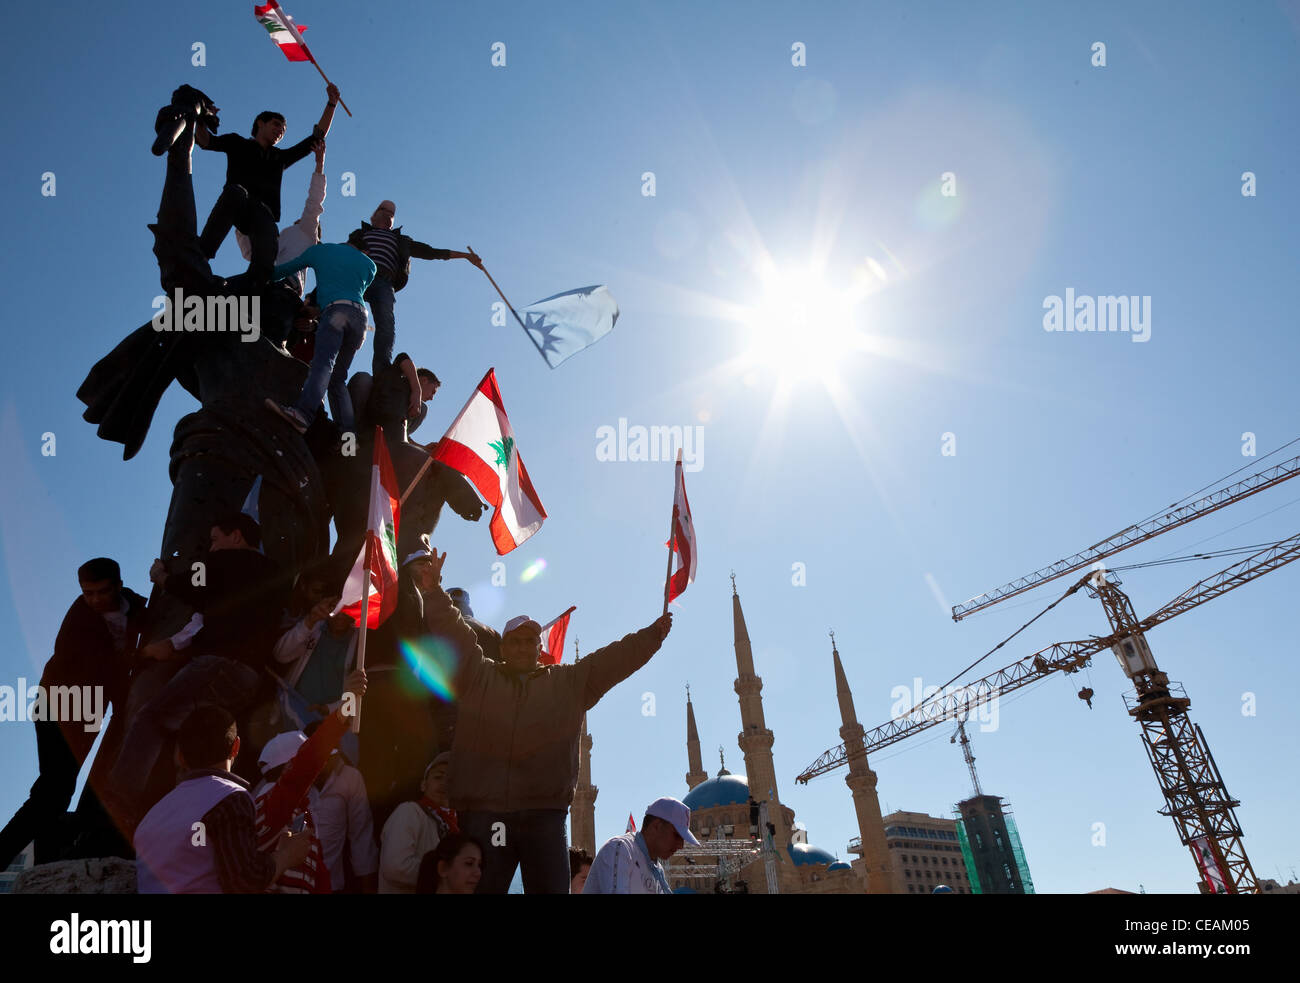 Sostenitori politici con le bandiere scavalcare Piazza Martiri monumento a Beirut, in Libano durante la primavera araba del 2011. Angolo basso Foto Stock